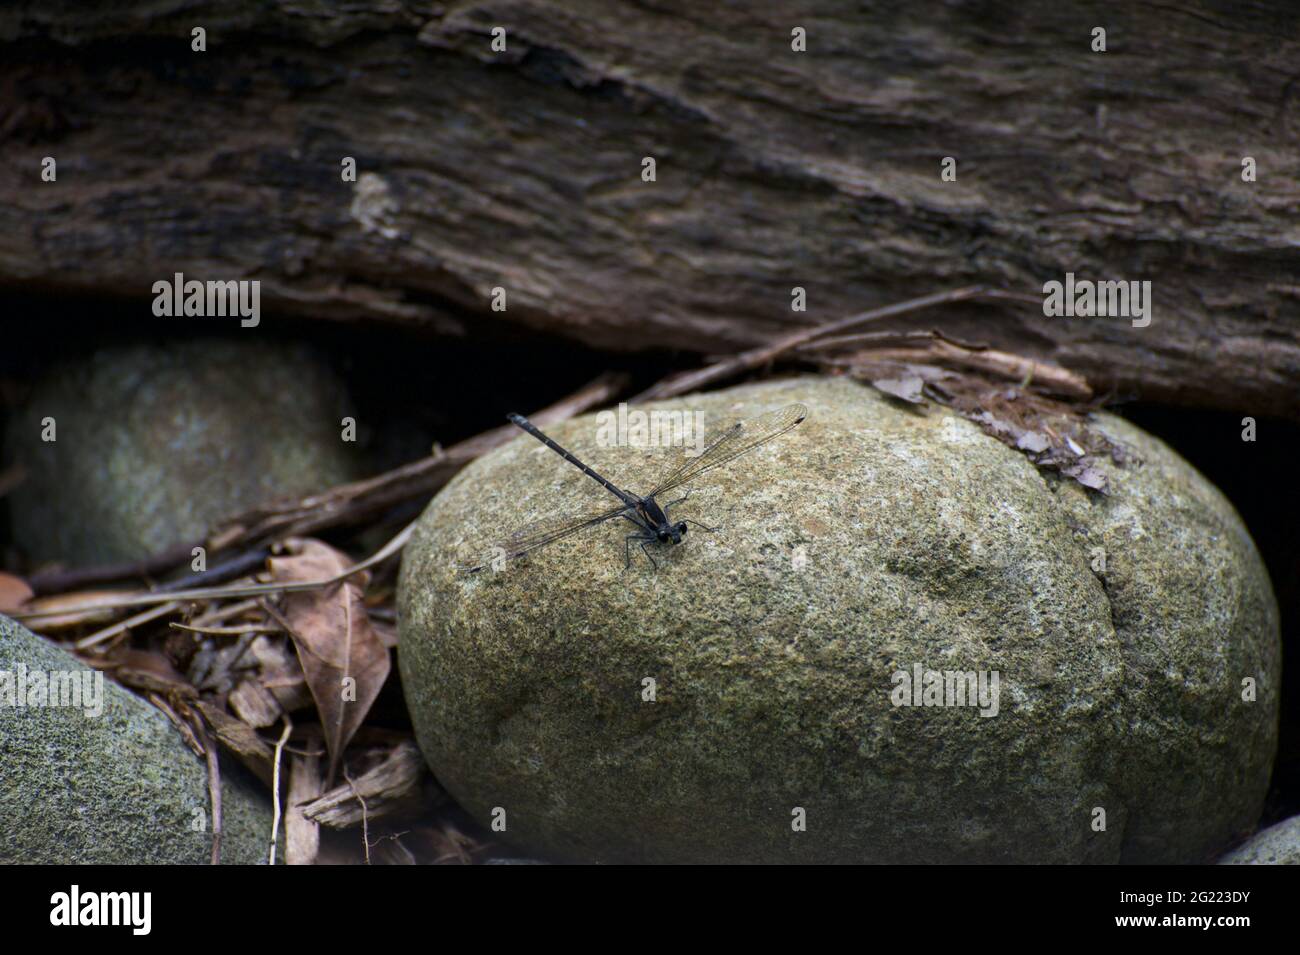 Damsel on a rock - Una mosca de Damsel (orden Odonata) baluza en una roca, cerca de un arroyo. Estos depredadores se alimentan de otros insectos, particularmente los mosquitos. Foto de stock